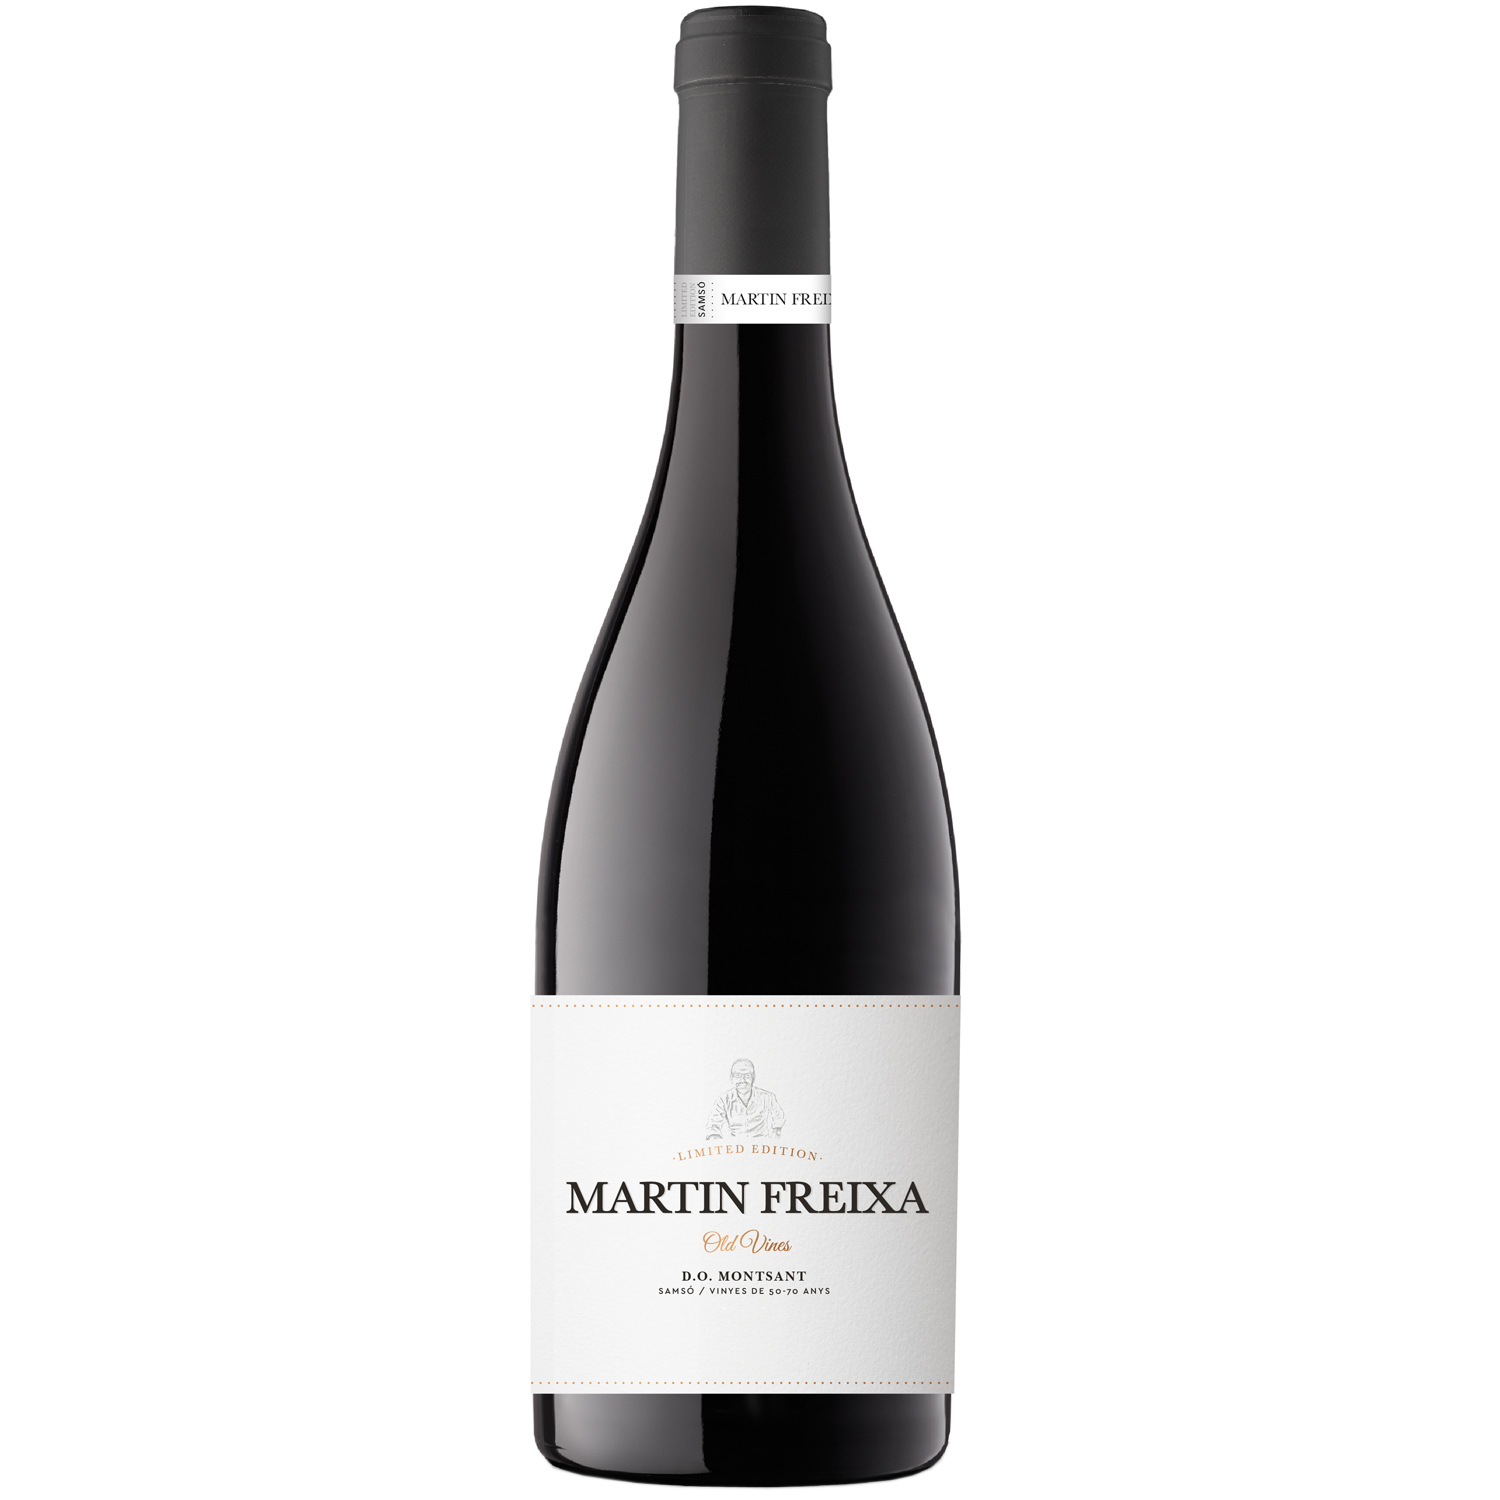 Martin Freixa Old Vines 2014